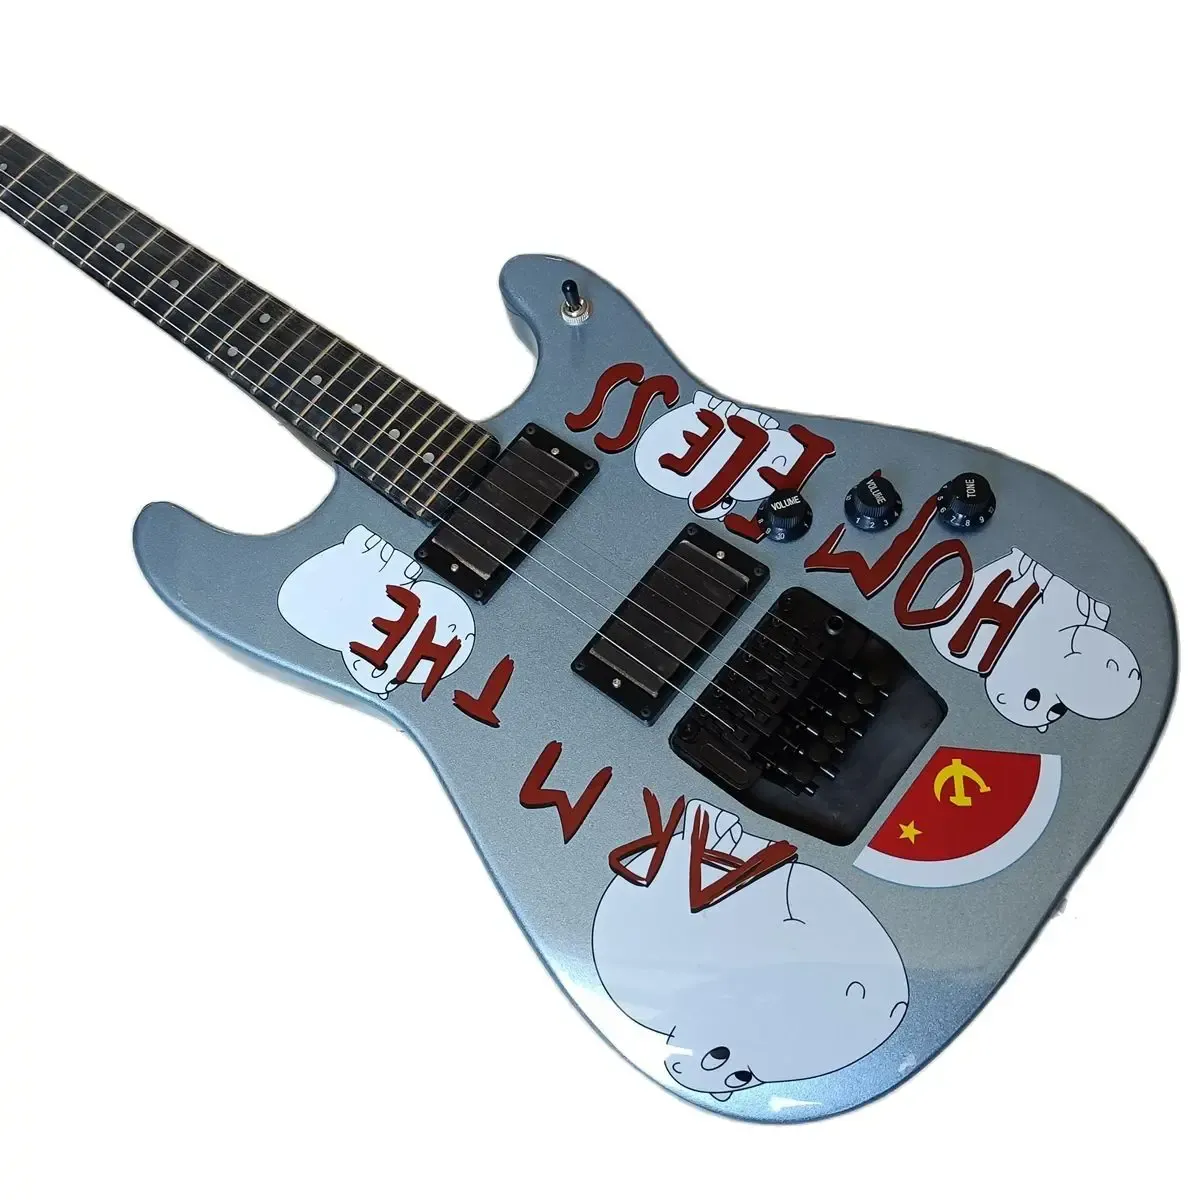 Gitaar Custom Tom Morello Arm De dakloze elektrische gitaar metallic blauw zwarte brug tremolo staartstuk vergrendelingsmoer China gitaren